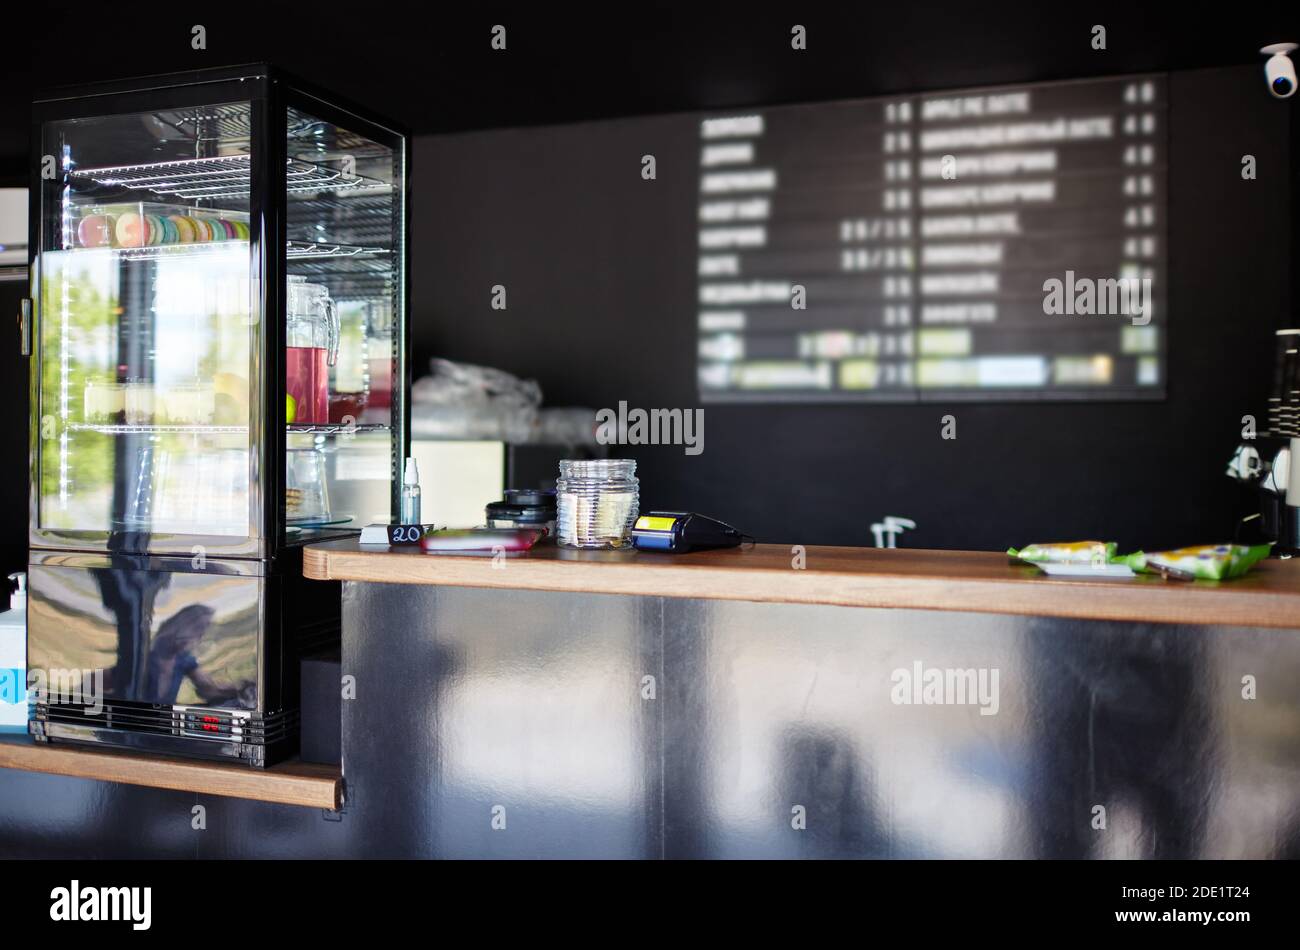 Intérieur du café-restaurant. Image floue de la vitrine, du comptoir de magasin et du panneau en bois avec les noms du café boissons chaudes et froides, prix Banque D'Images